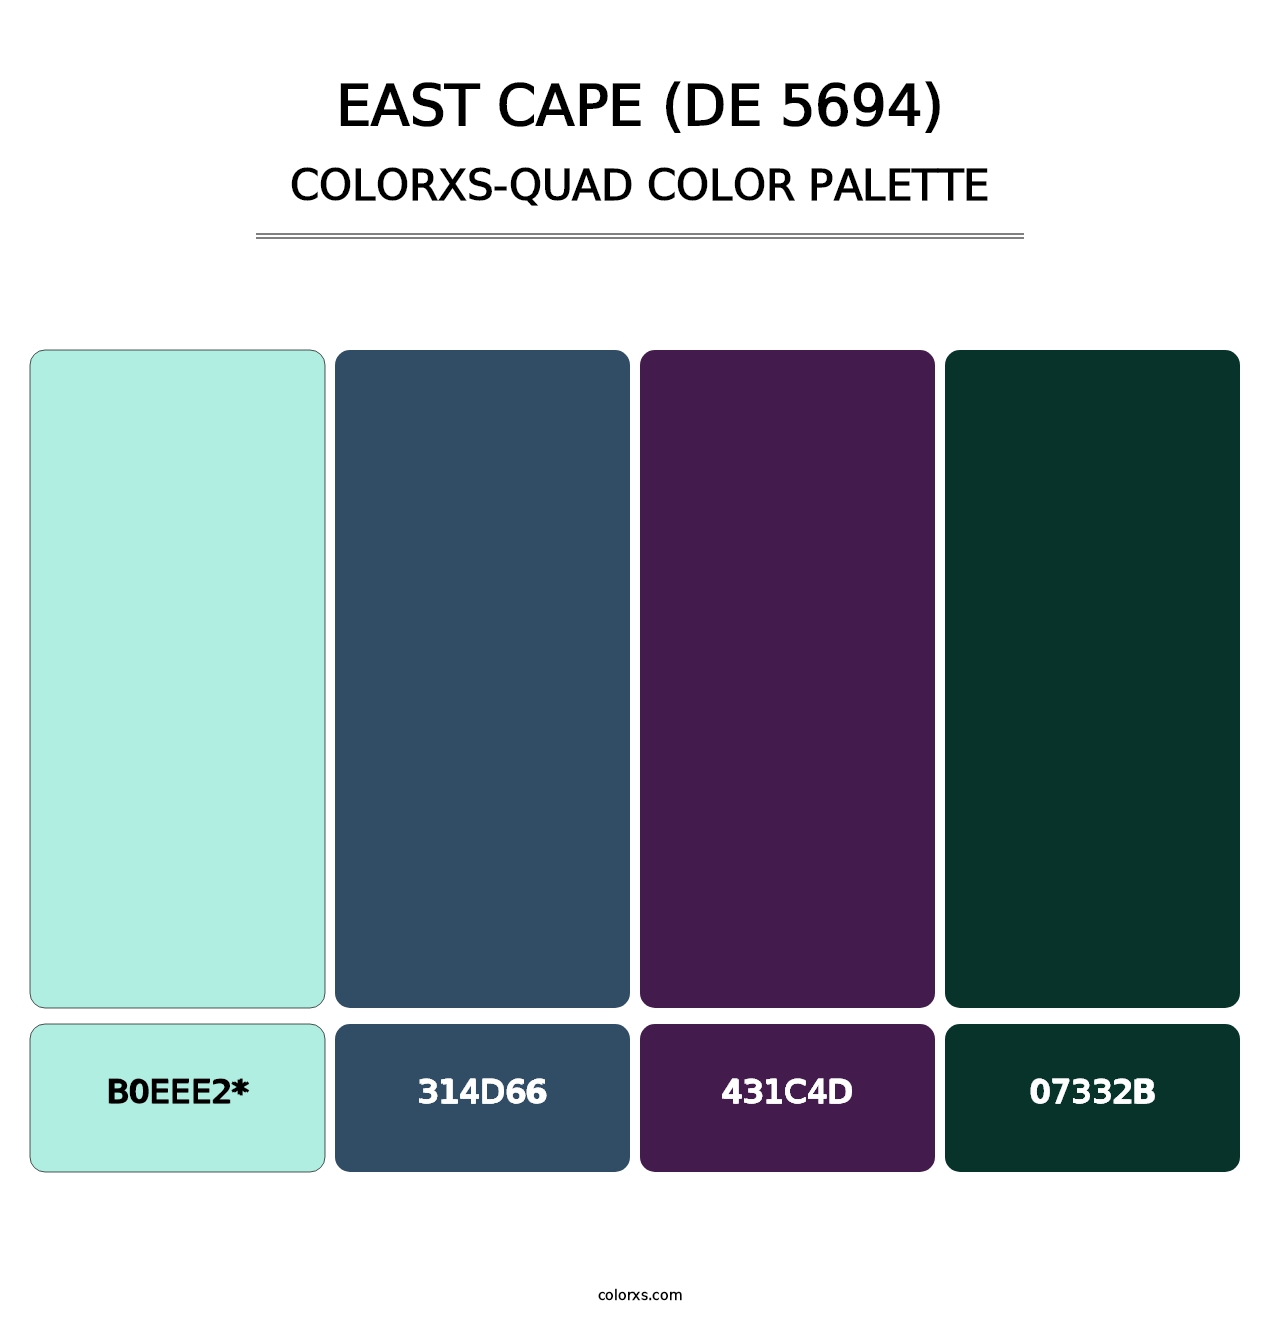 East Cape (DE 5694) - Colorxs Quad Palette